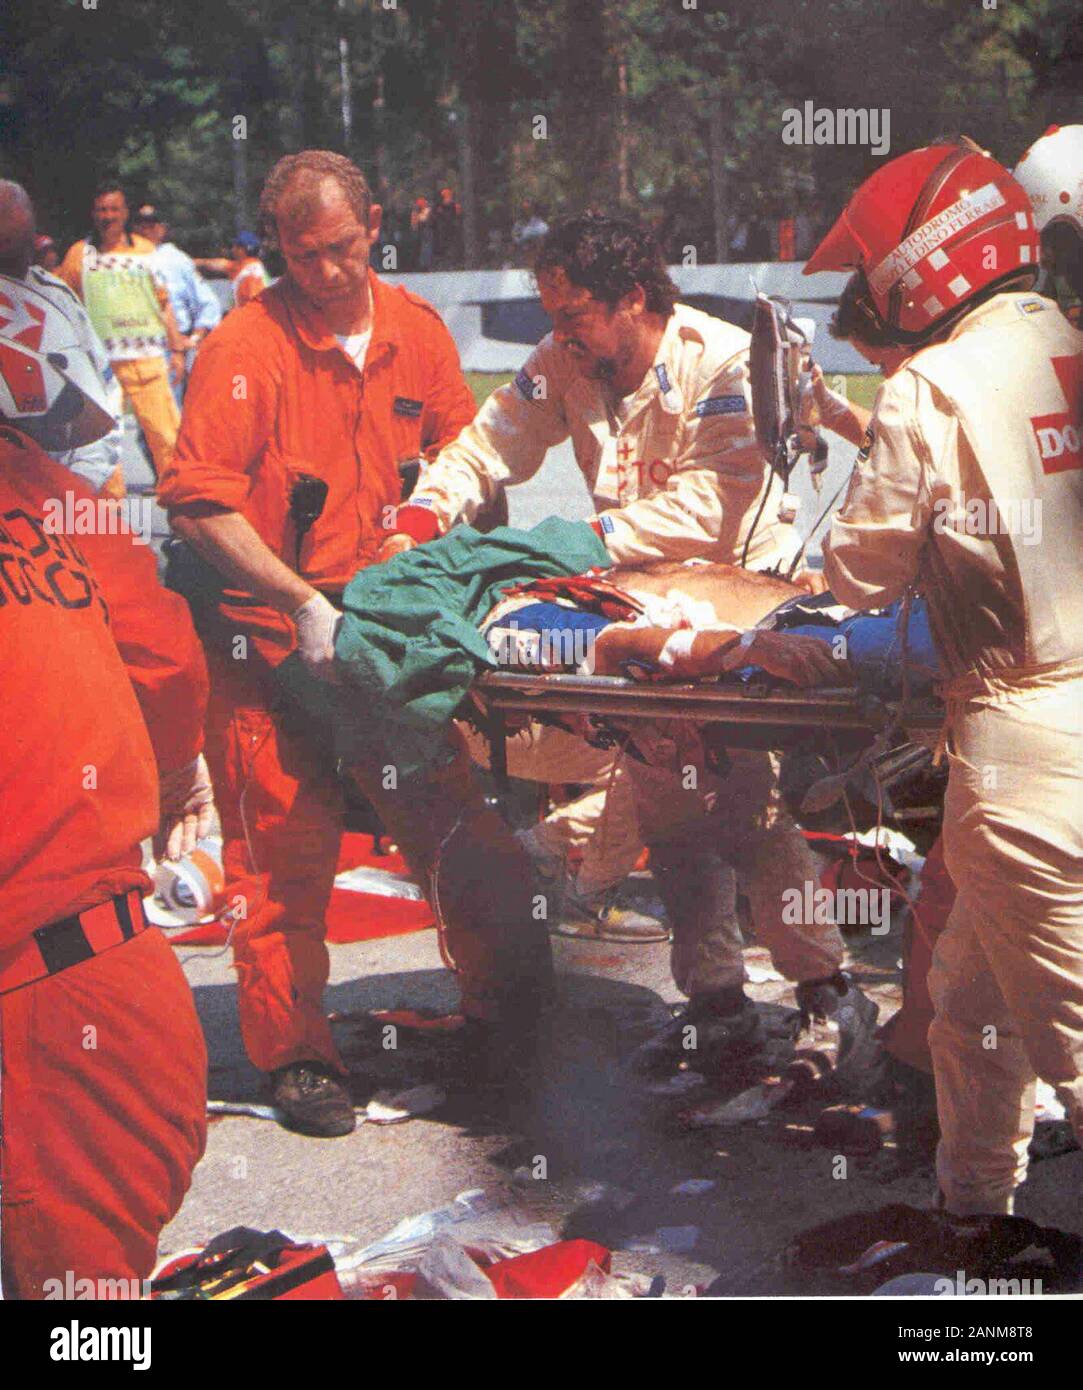 Soccorsi ad Ayrton Senna dopo l'incidente di Imola 1994; 1. Mai 1994; passionea300allora.it/forum/topic/60806-03-gran-premio-di-san-marino-1994/; Unkno n; Stockfoto